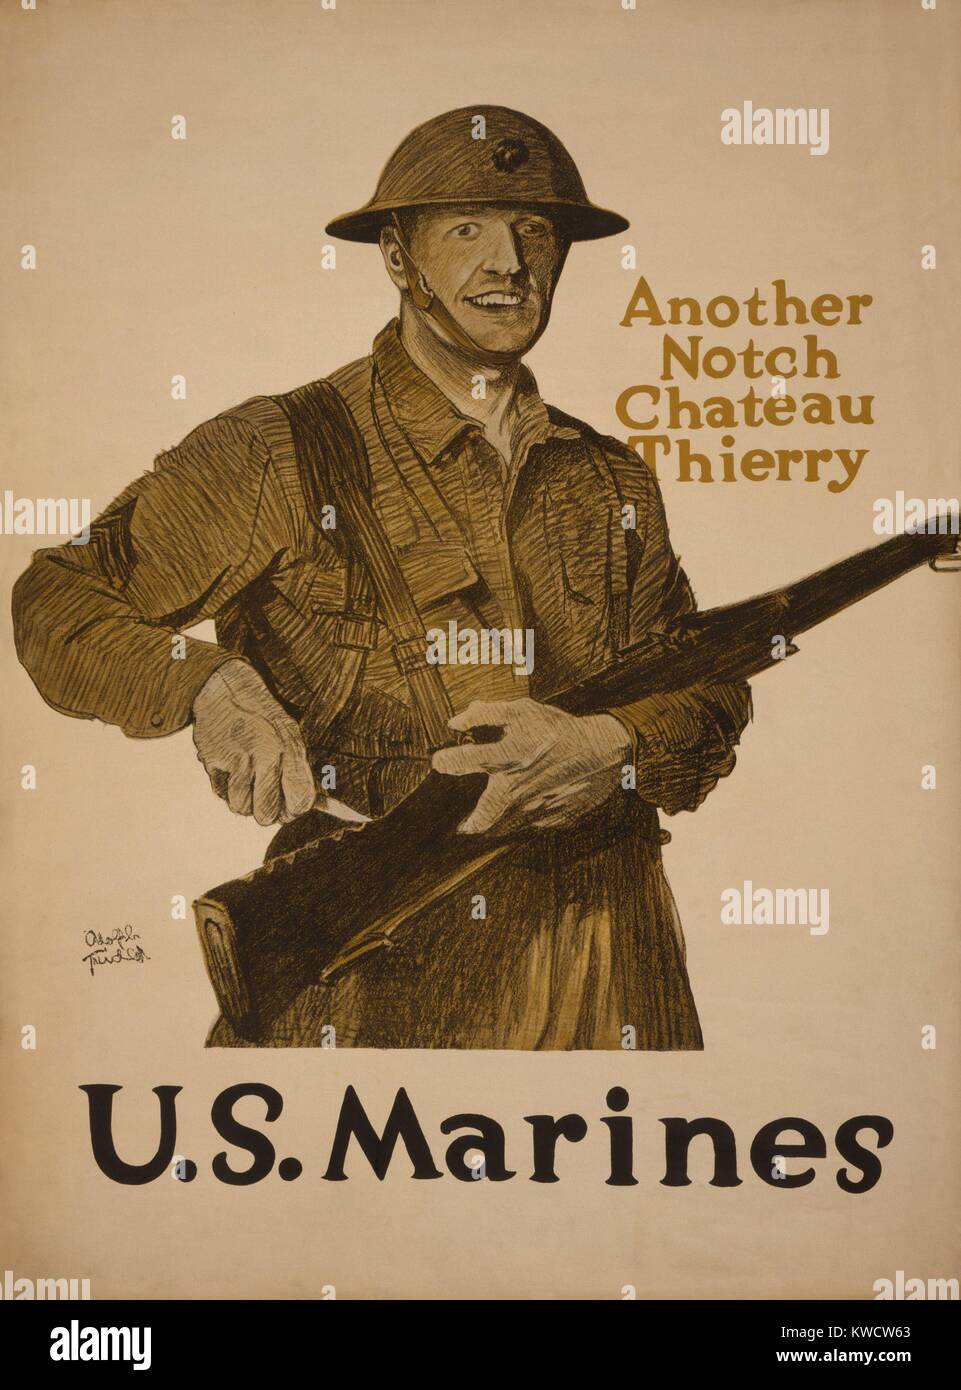 Weltkrieg 1. Recruiting Poster. Eine andere Kerbe, Chateau Thierry - USA Marines. Us-Marines gewann die Schlacht von Chateau-Thierry, am 18. Juli 1918. Es war eine der ersten Aktionen des amerikanischen Expeditionary Force (AEF), die begegnet einem deutschen Angriff am 15. Juli. (BSLOC_2013_1_184) Stockfoto